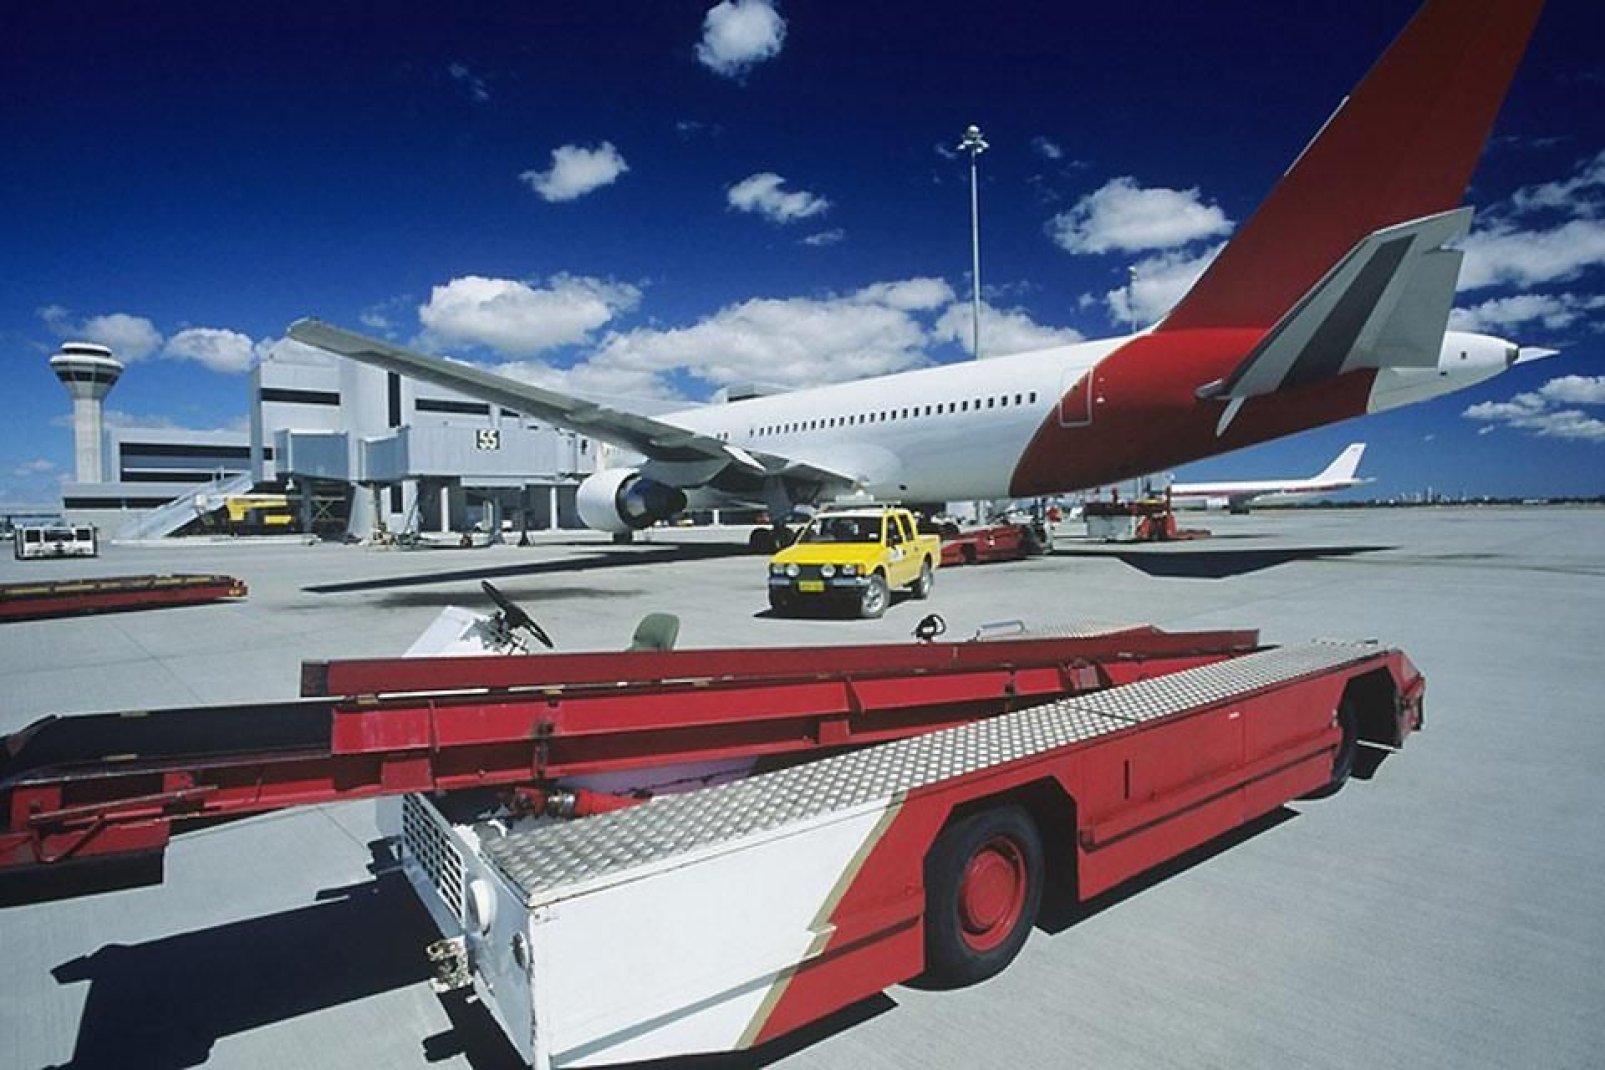 Der Flughafen von Perth liegt im Osten der Stadt. Der Flughafen Jandakot hingegen befindet sich im Sden.